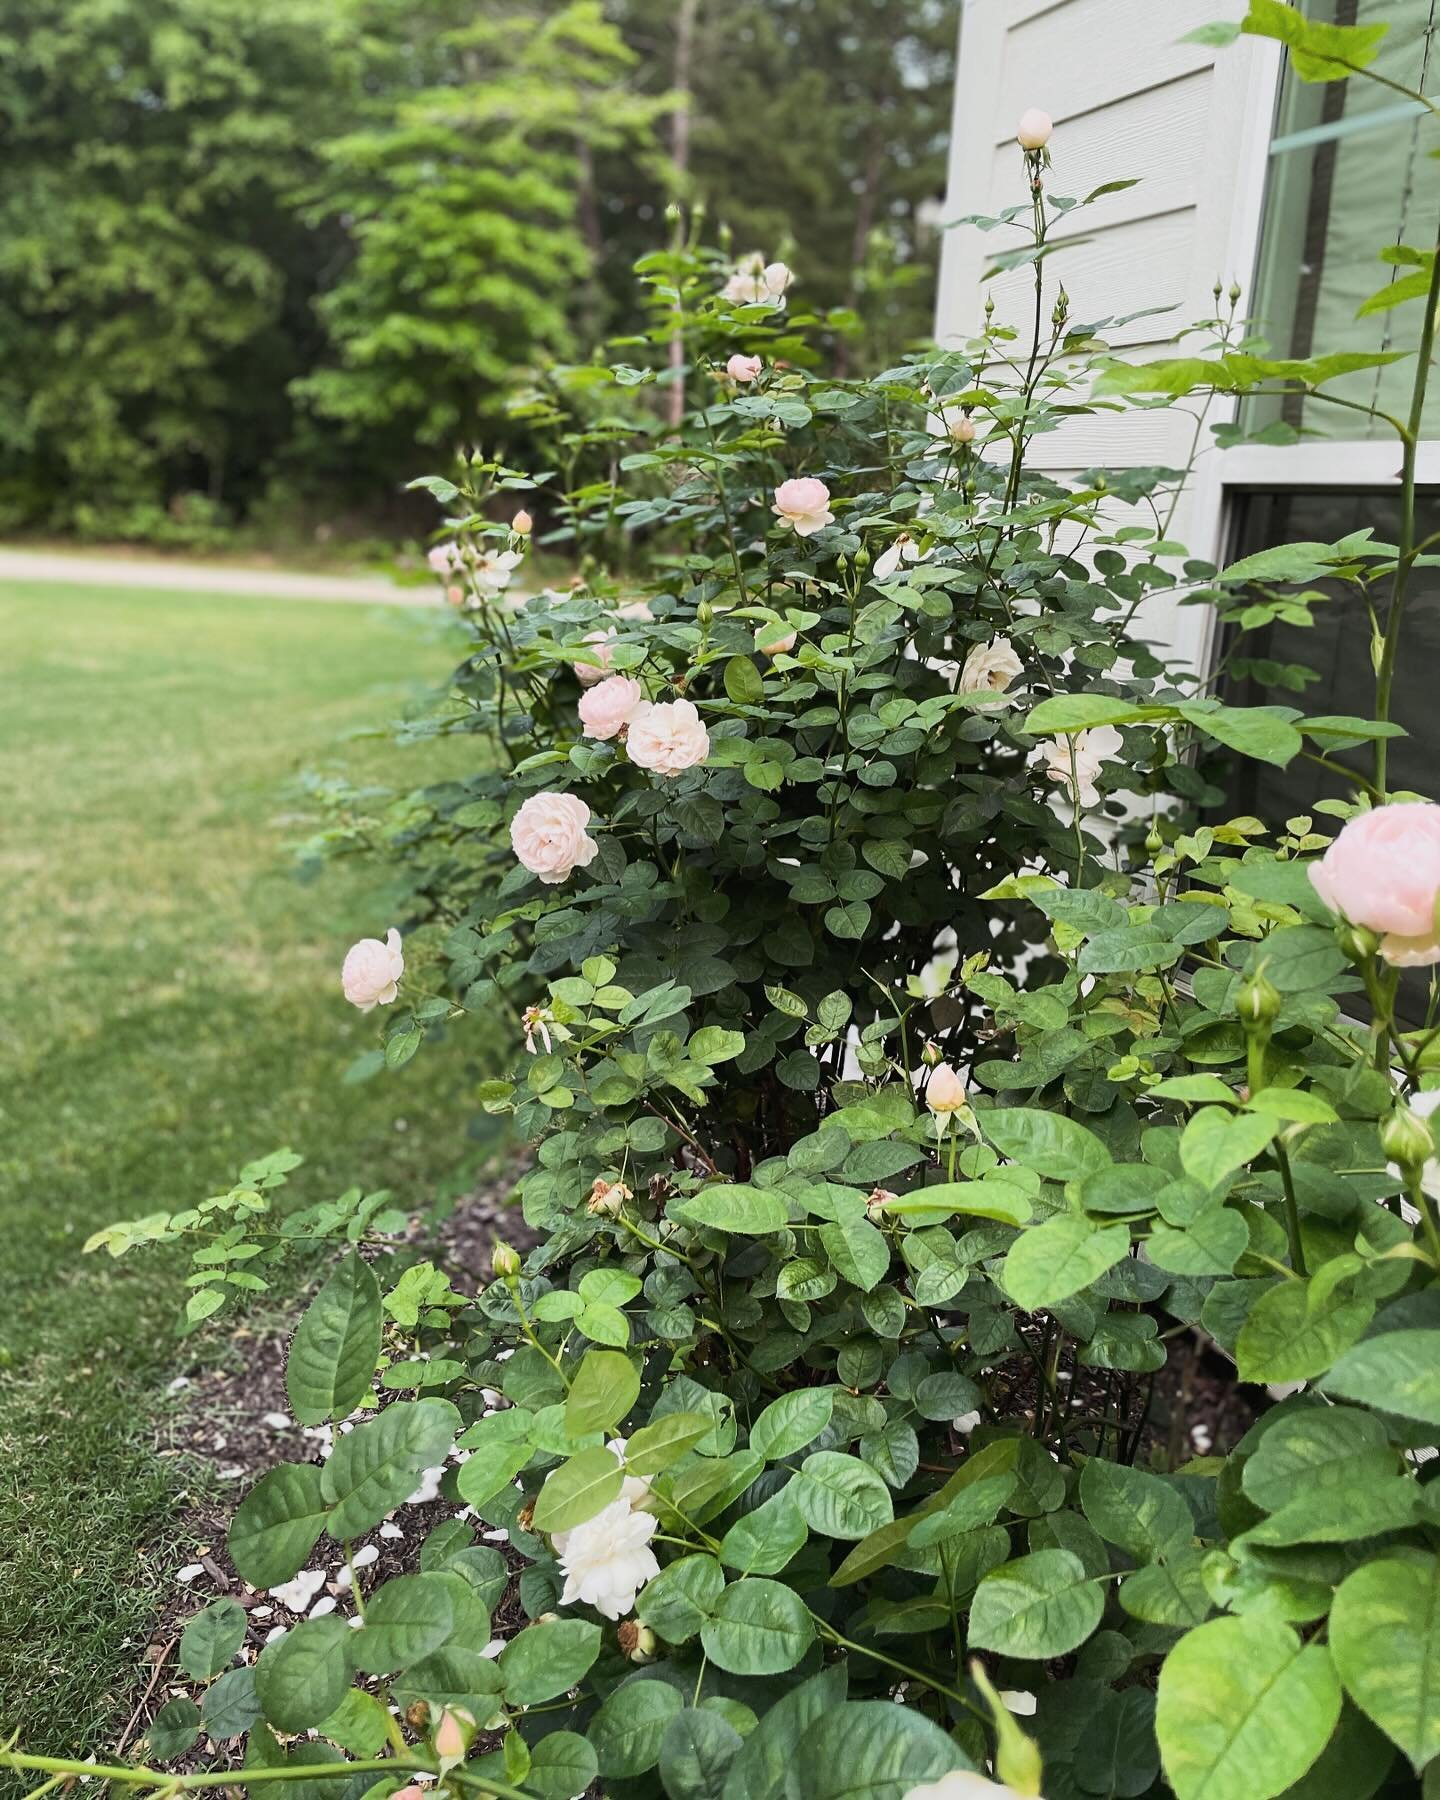 Roll that beautiful heirloom rose footage. 

#heirloomroses #gardenroses #countryside #lightpinkroses #gentlehermione #davidaustinroses #rural_love